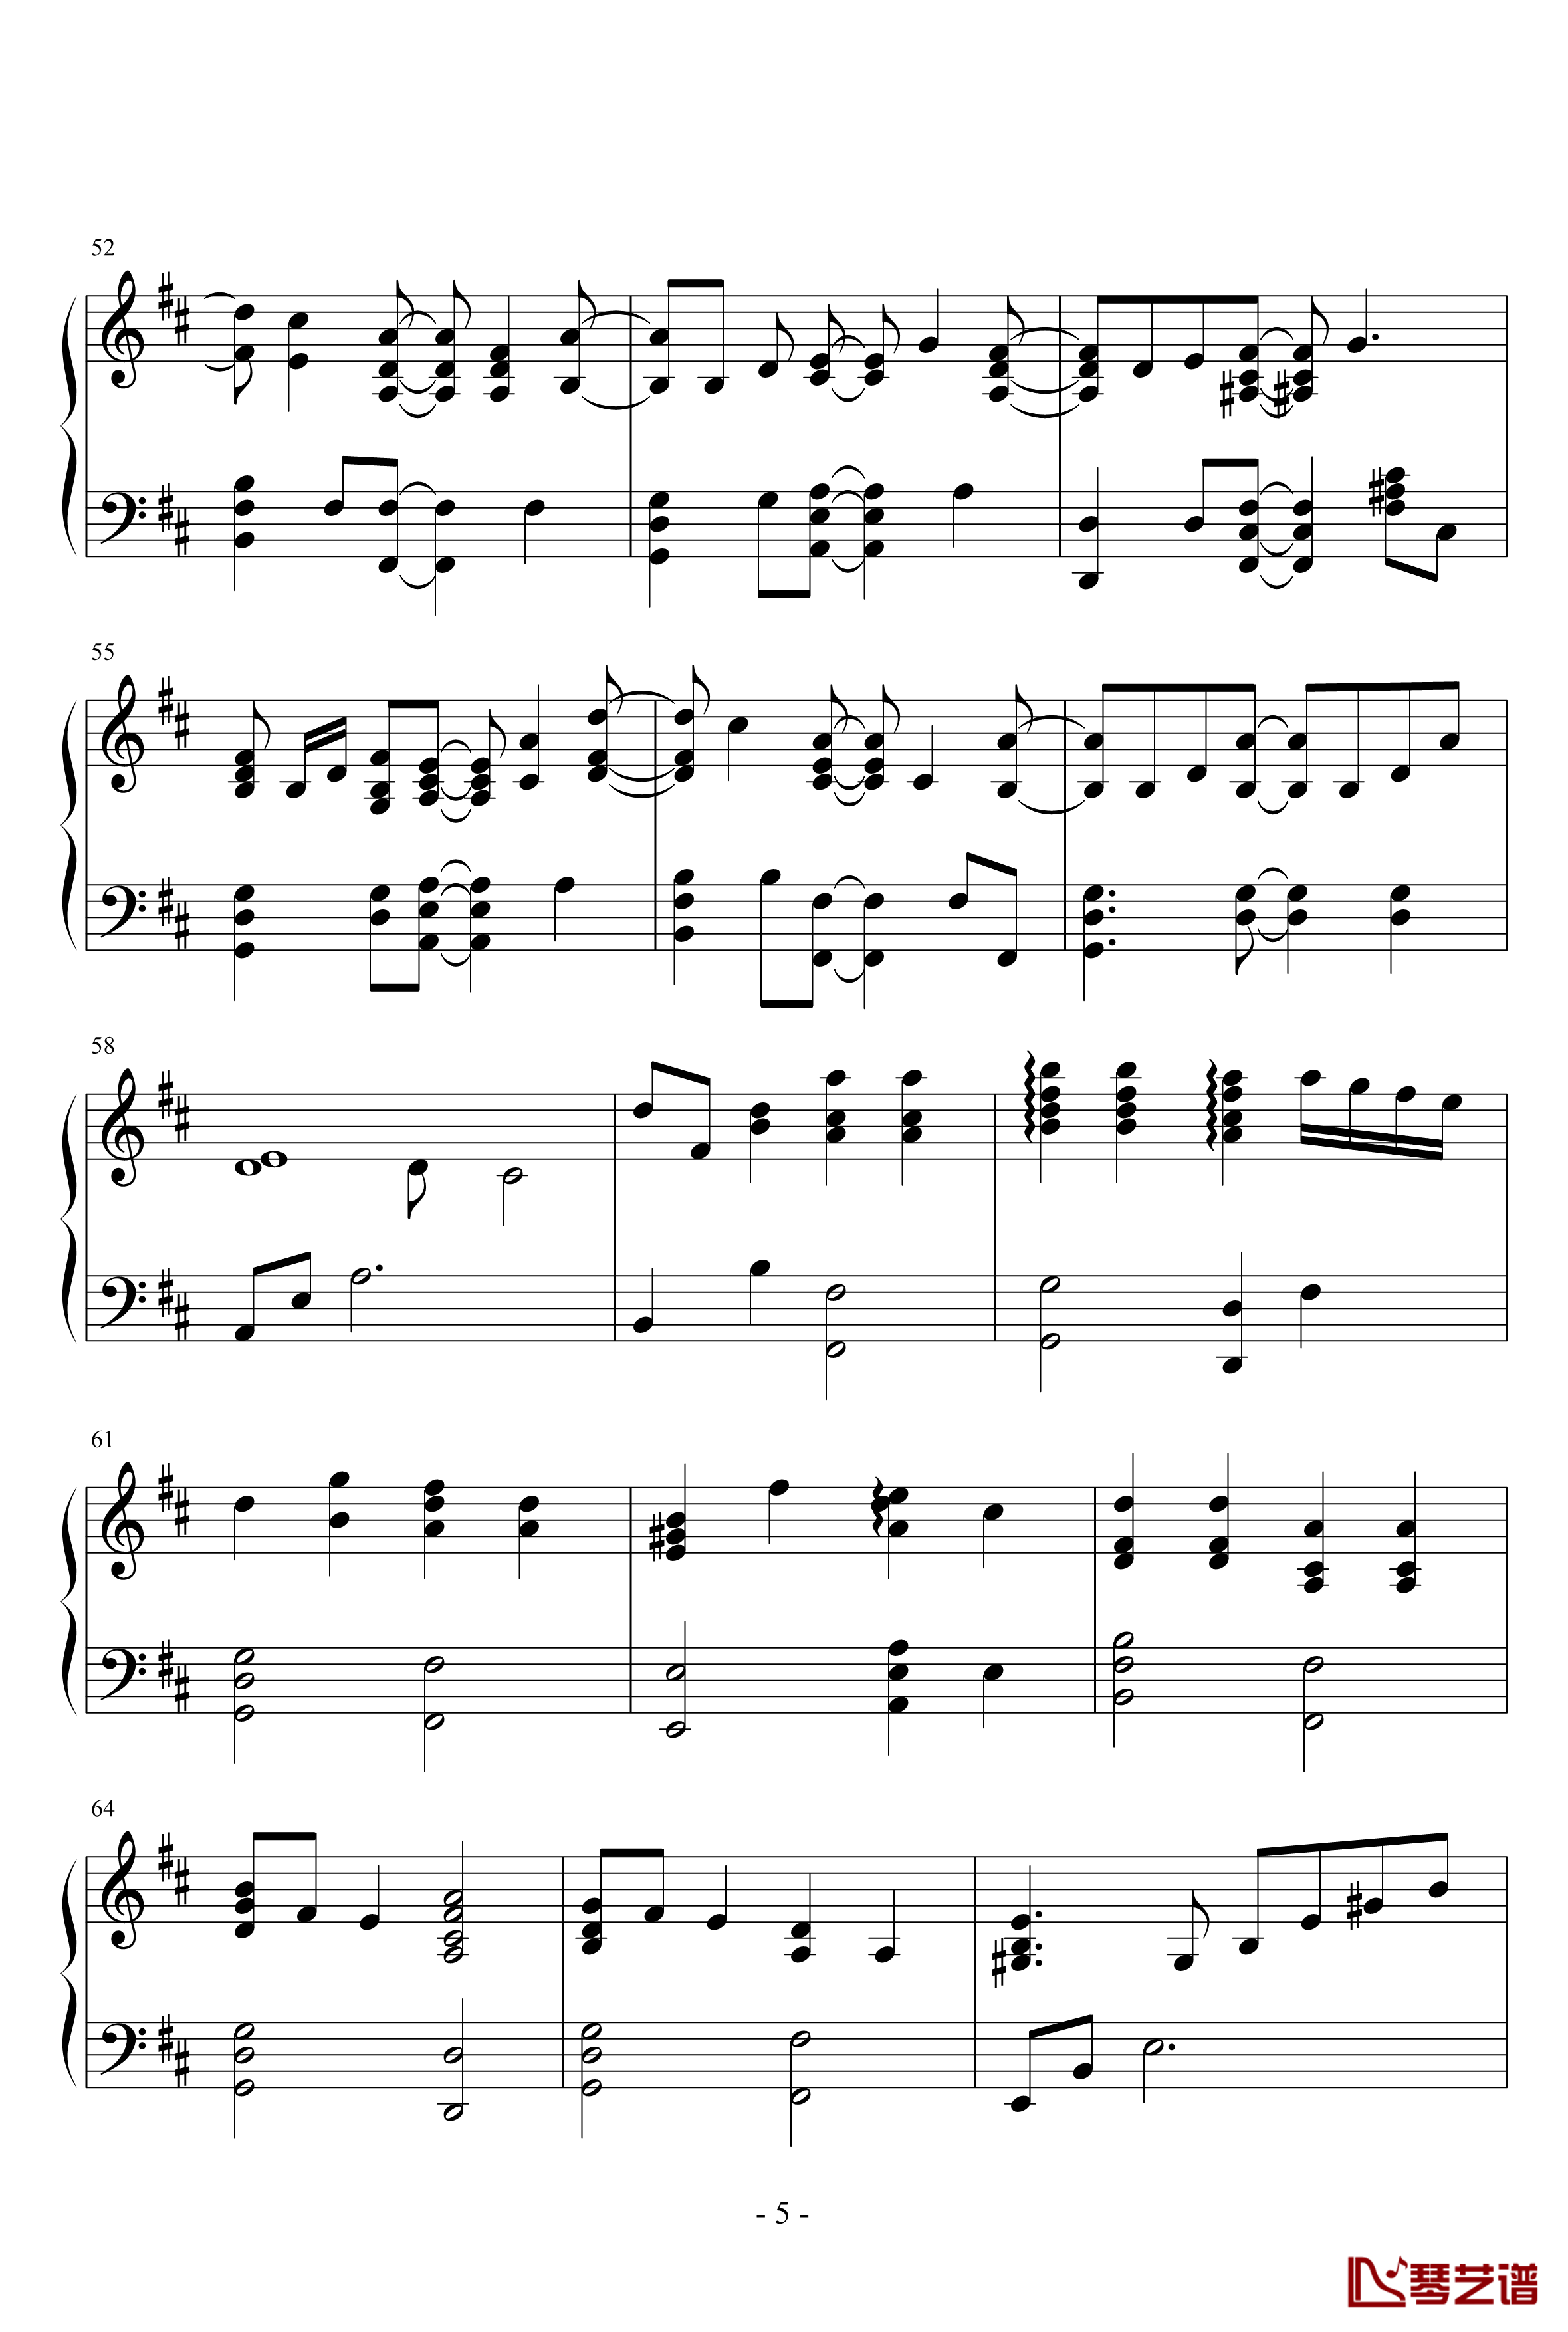 小星星幻想曲钢琴谱-完美版-V.K克5